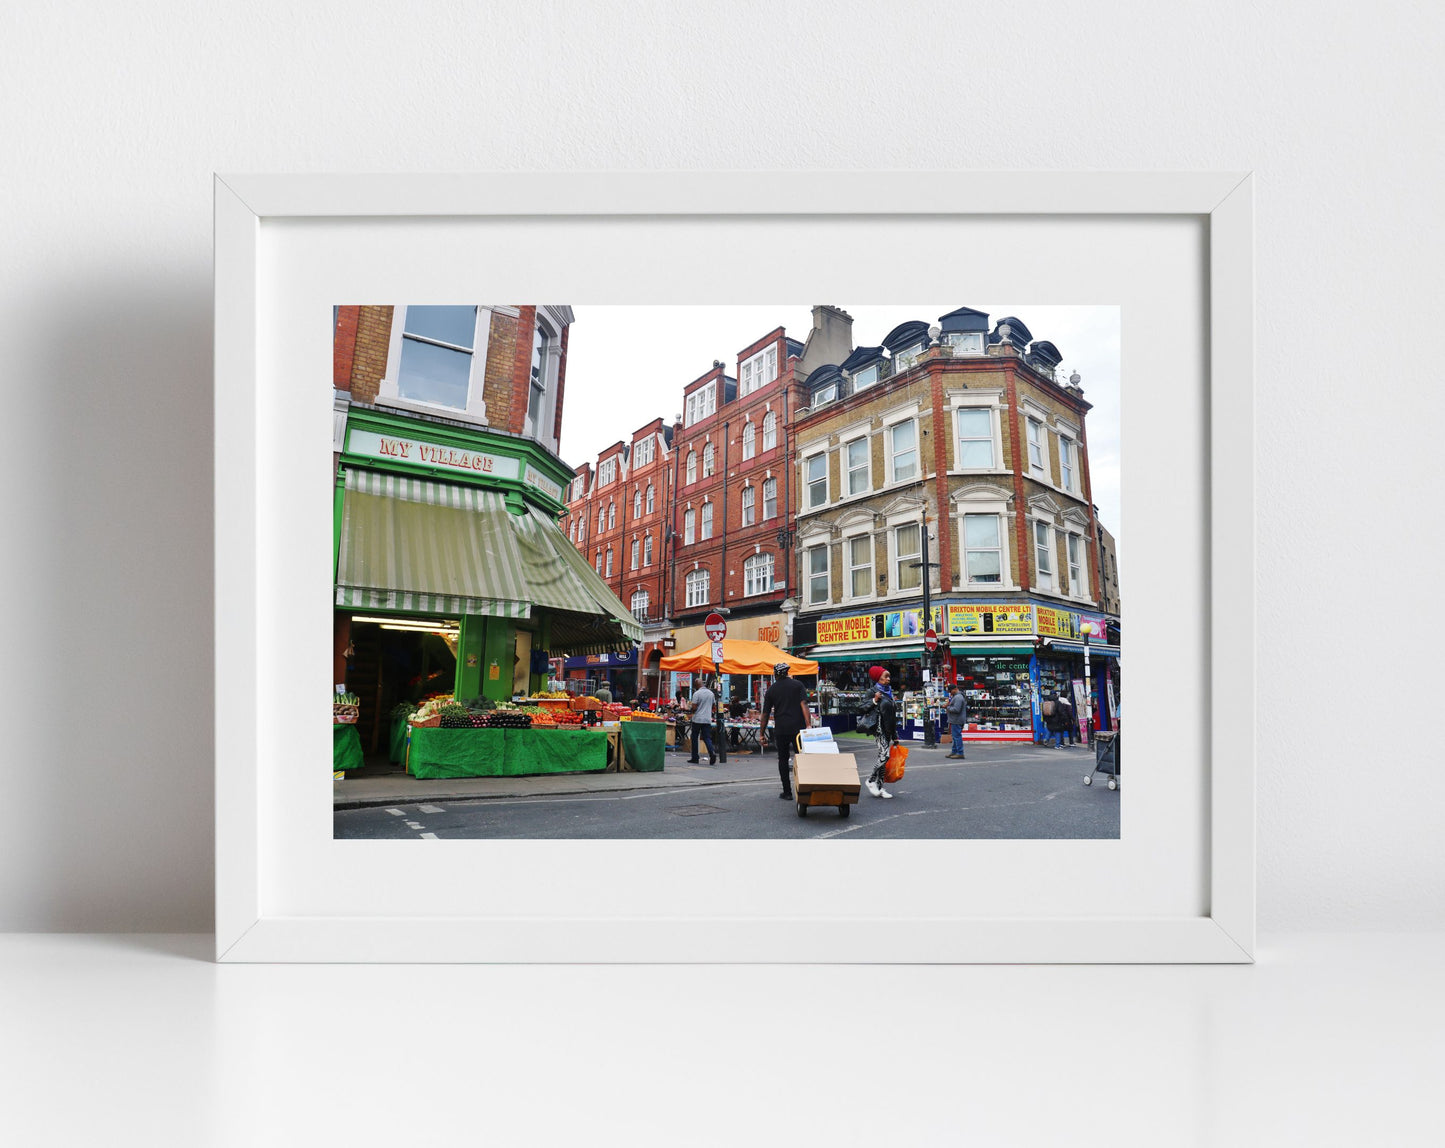 London Brixton Market Photography Print